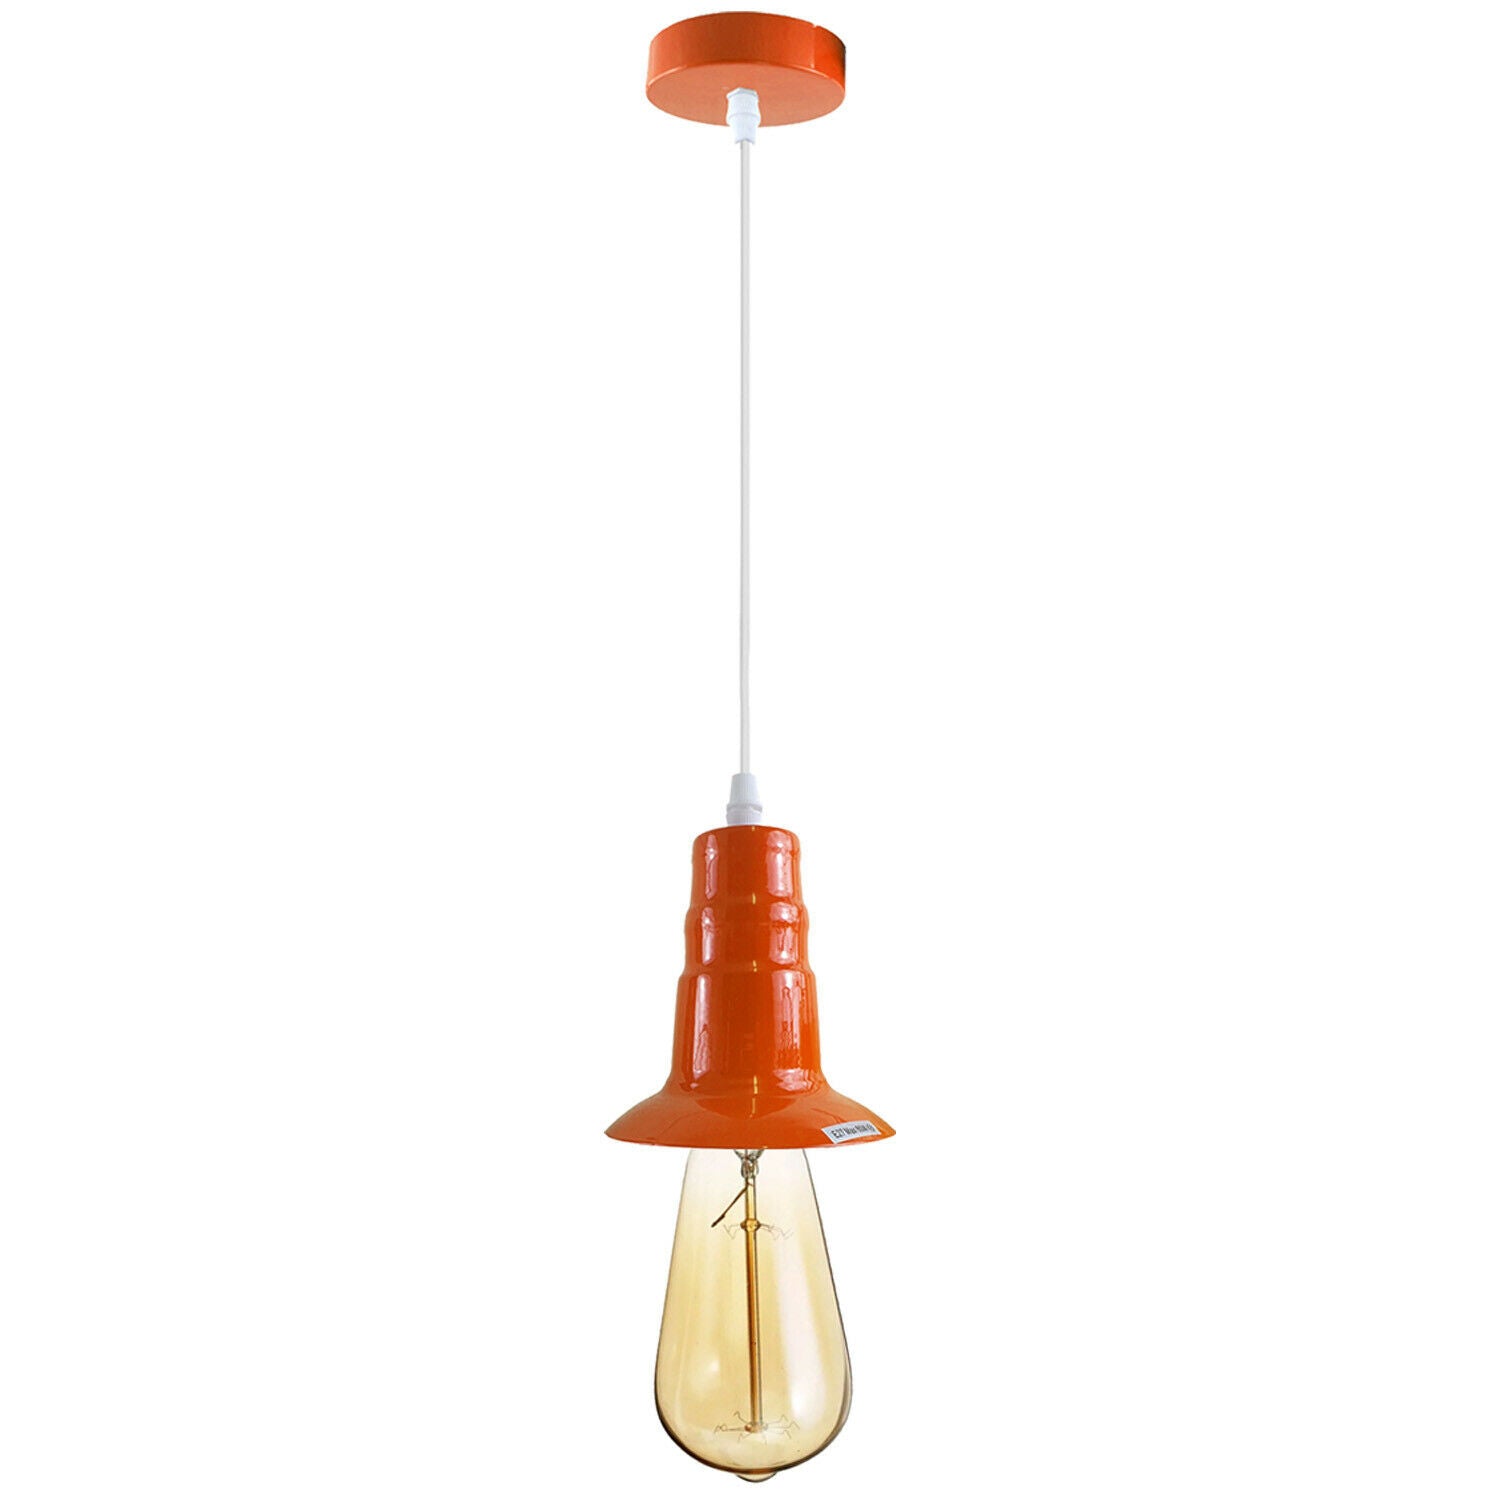 Orange Ceiling Light Fitting Industrial Pendant Lamp Bulb Holder~1682 - LEDSone UK Ltd